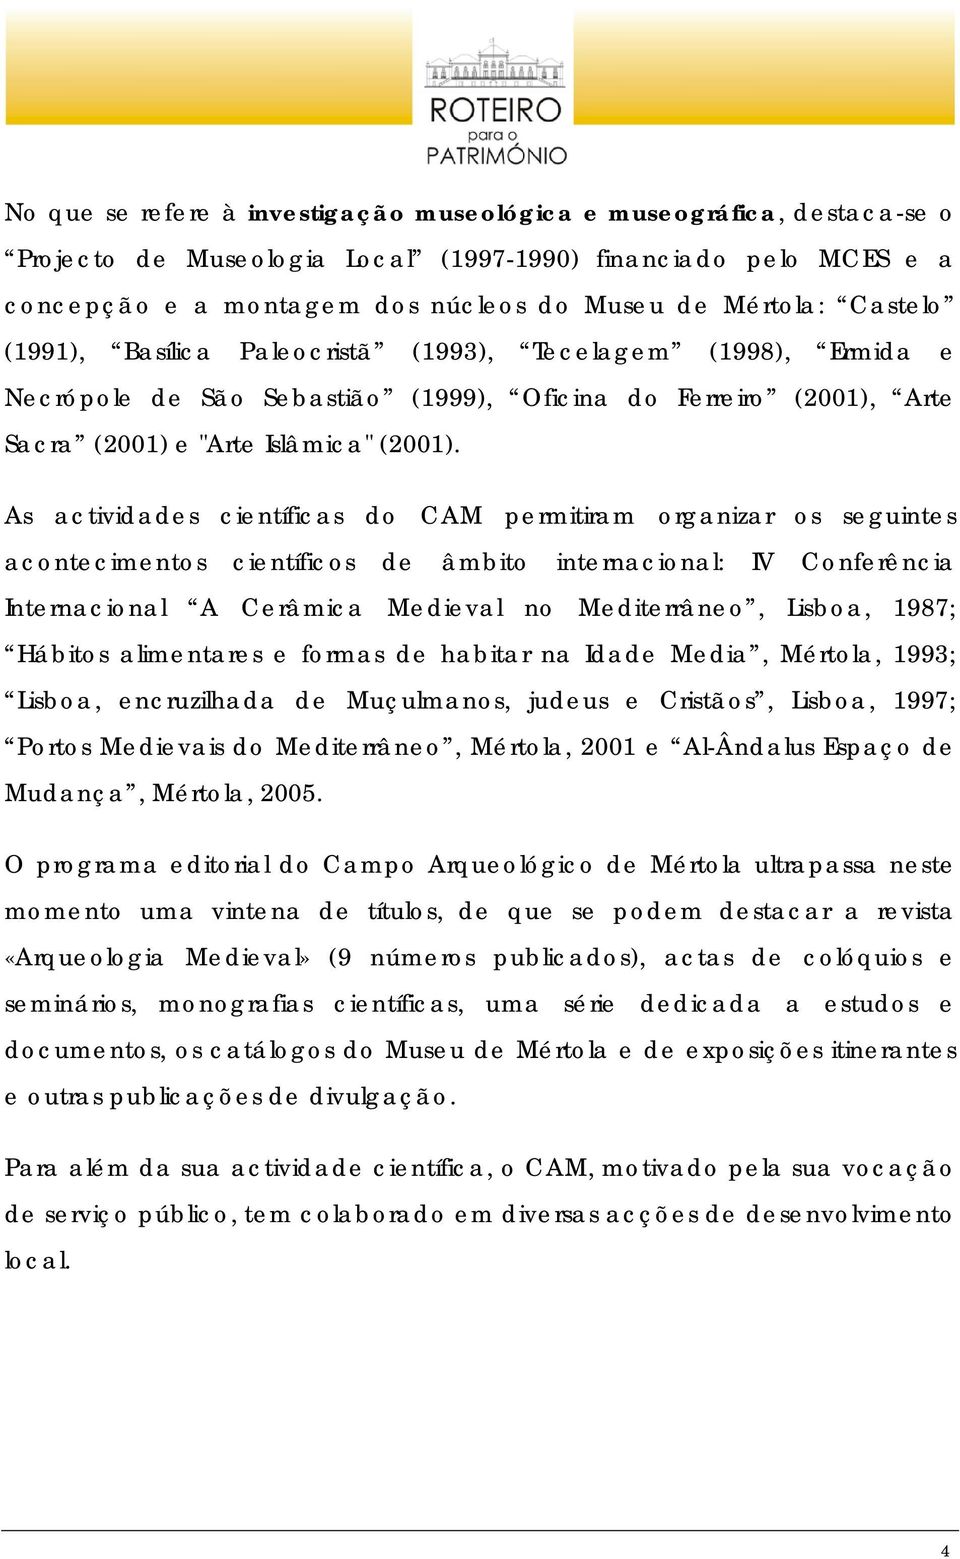 As actividades científicas do CAM permitiram organizar os seguintes acontecimentos científicos de âmbito internacional: IV Conferência Internacional A Cerâmica Medieval no Mediterrâneo, Lisboa, 1987;